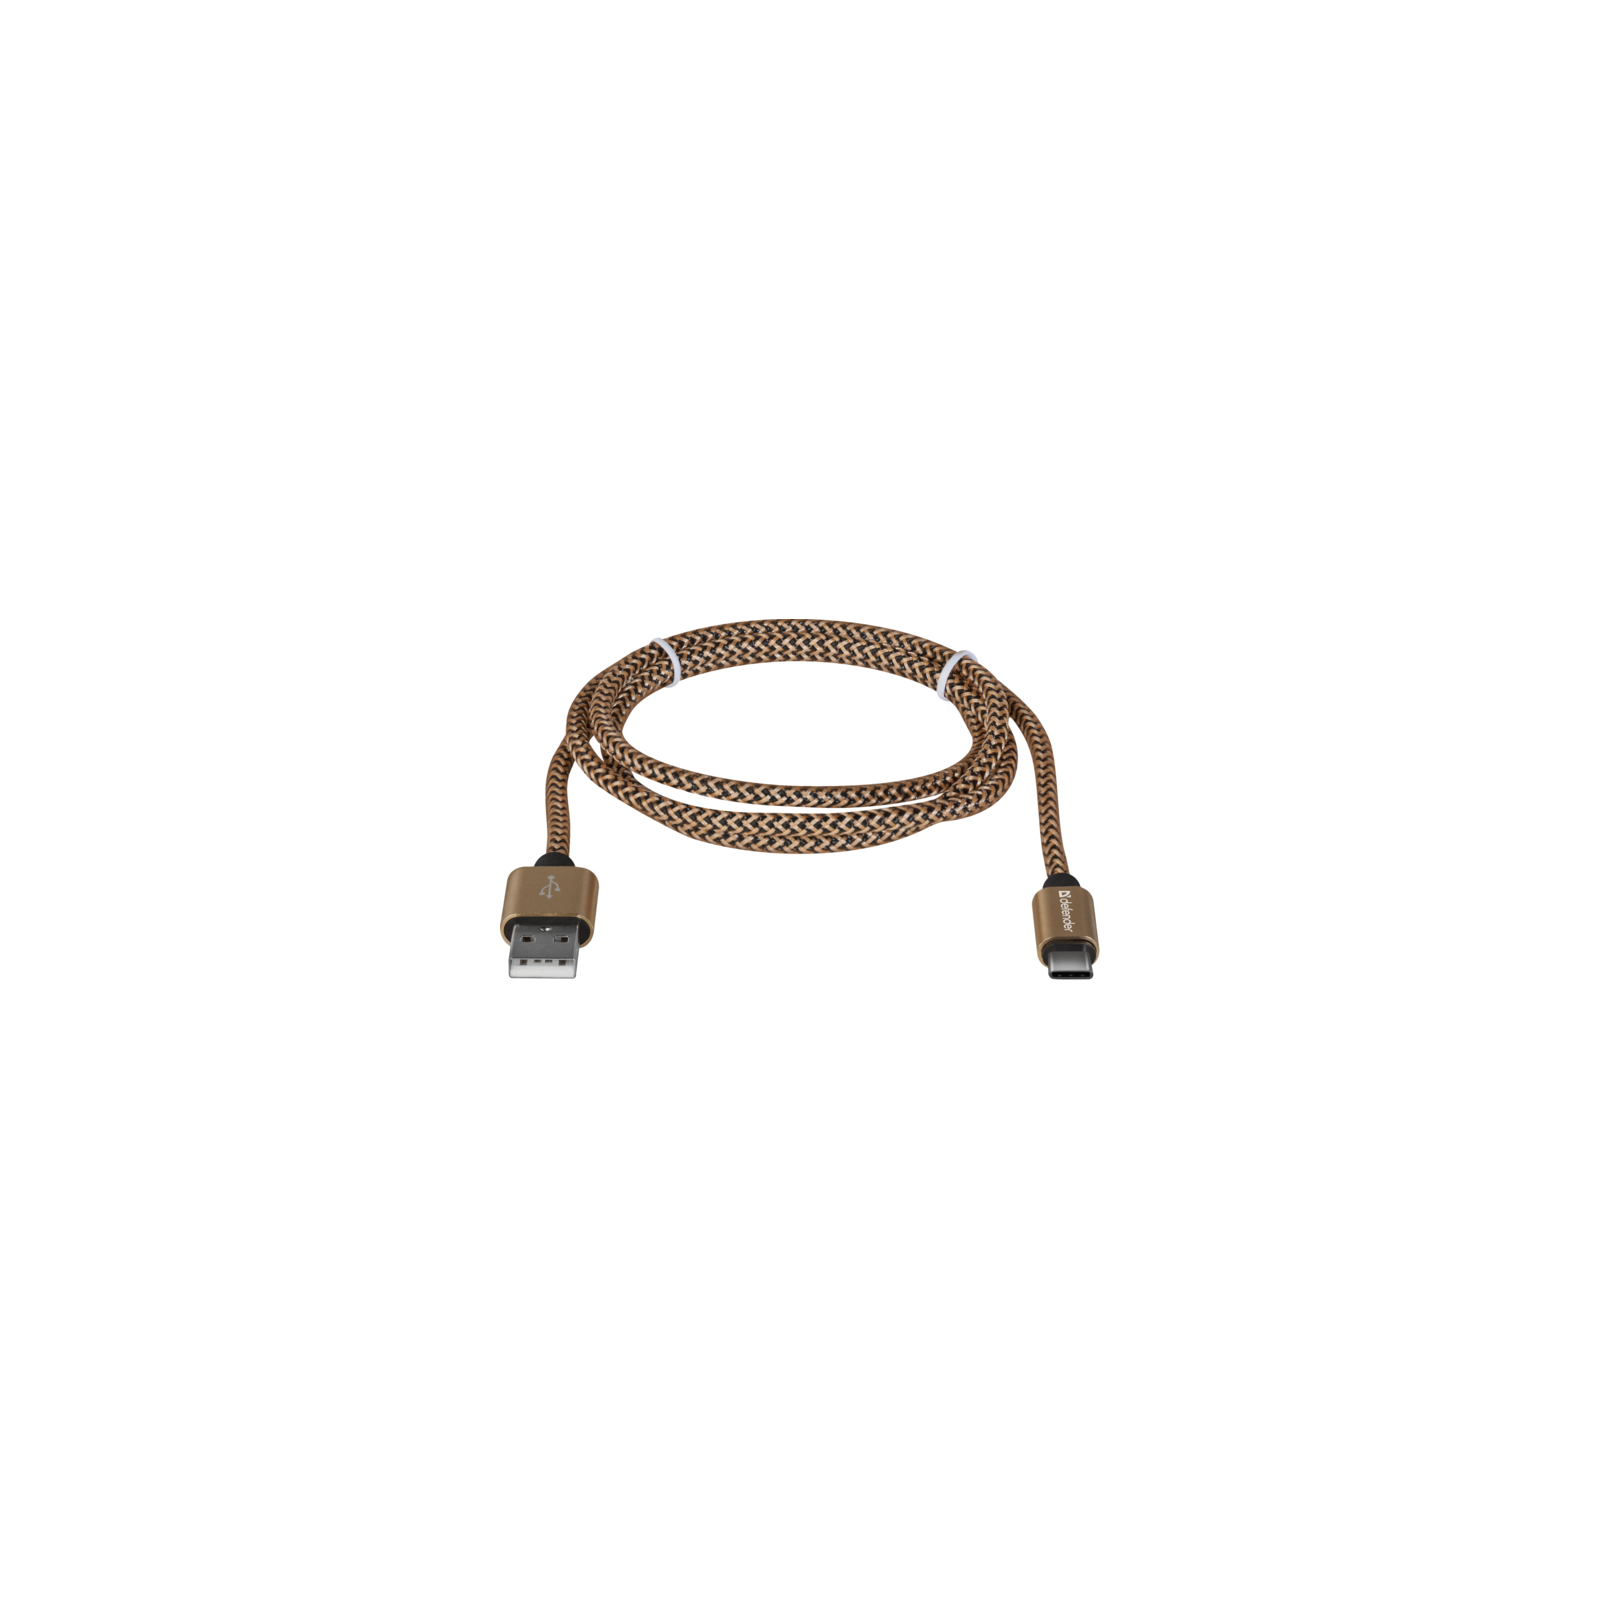 Дата кабель USB 2.0 AM to Type-C 1.0m USB09-03T PRO gold Defender (87812) изображение 2